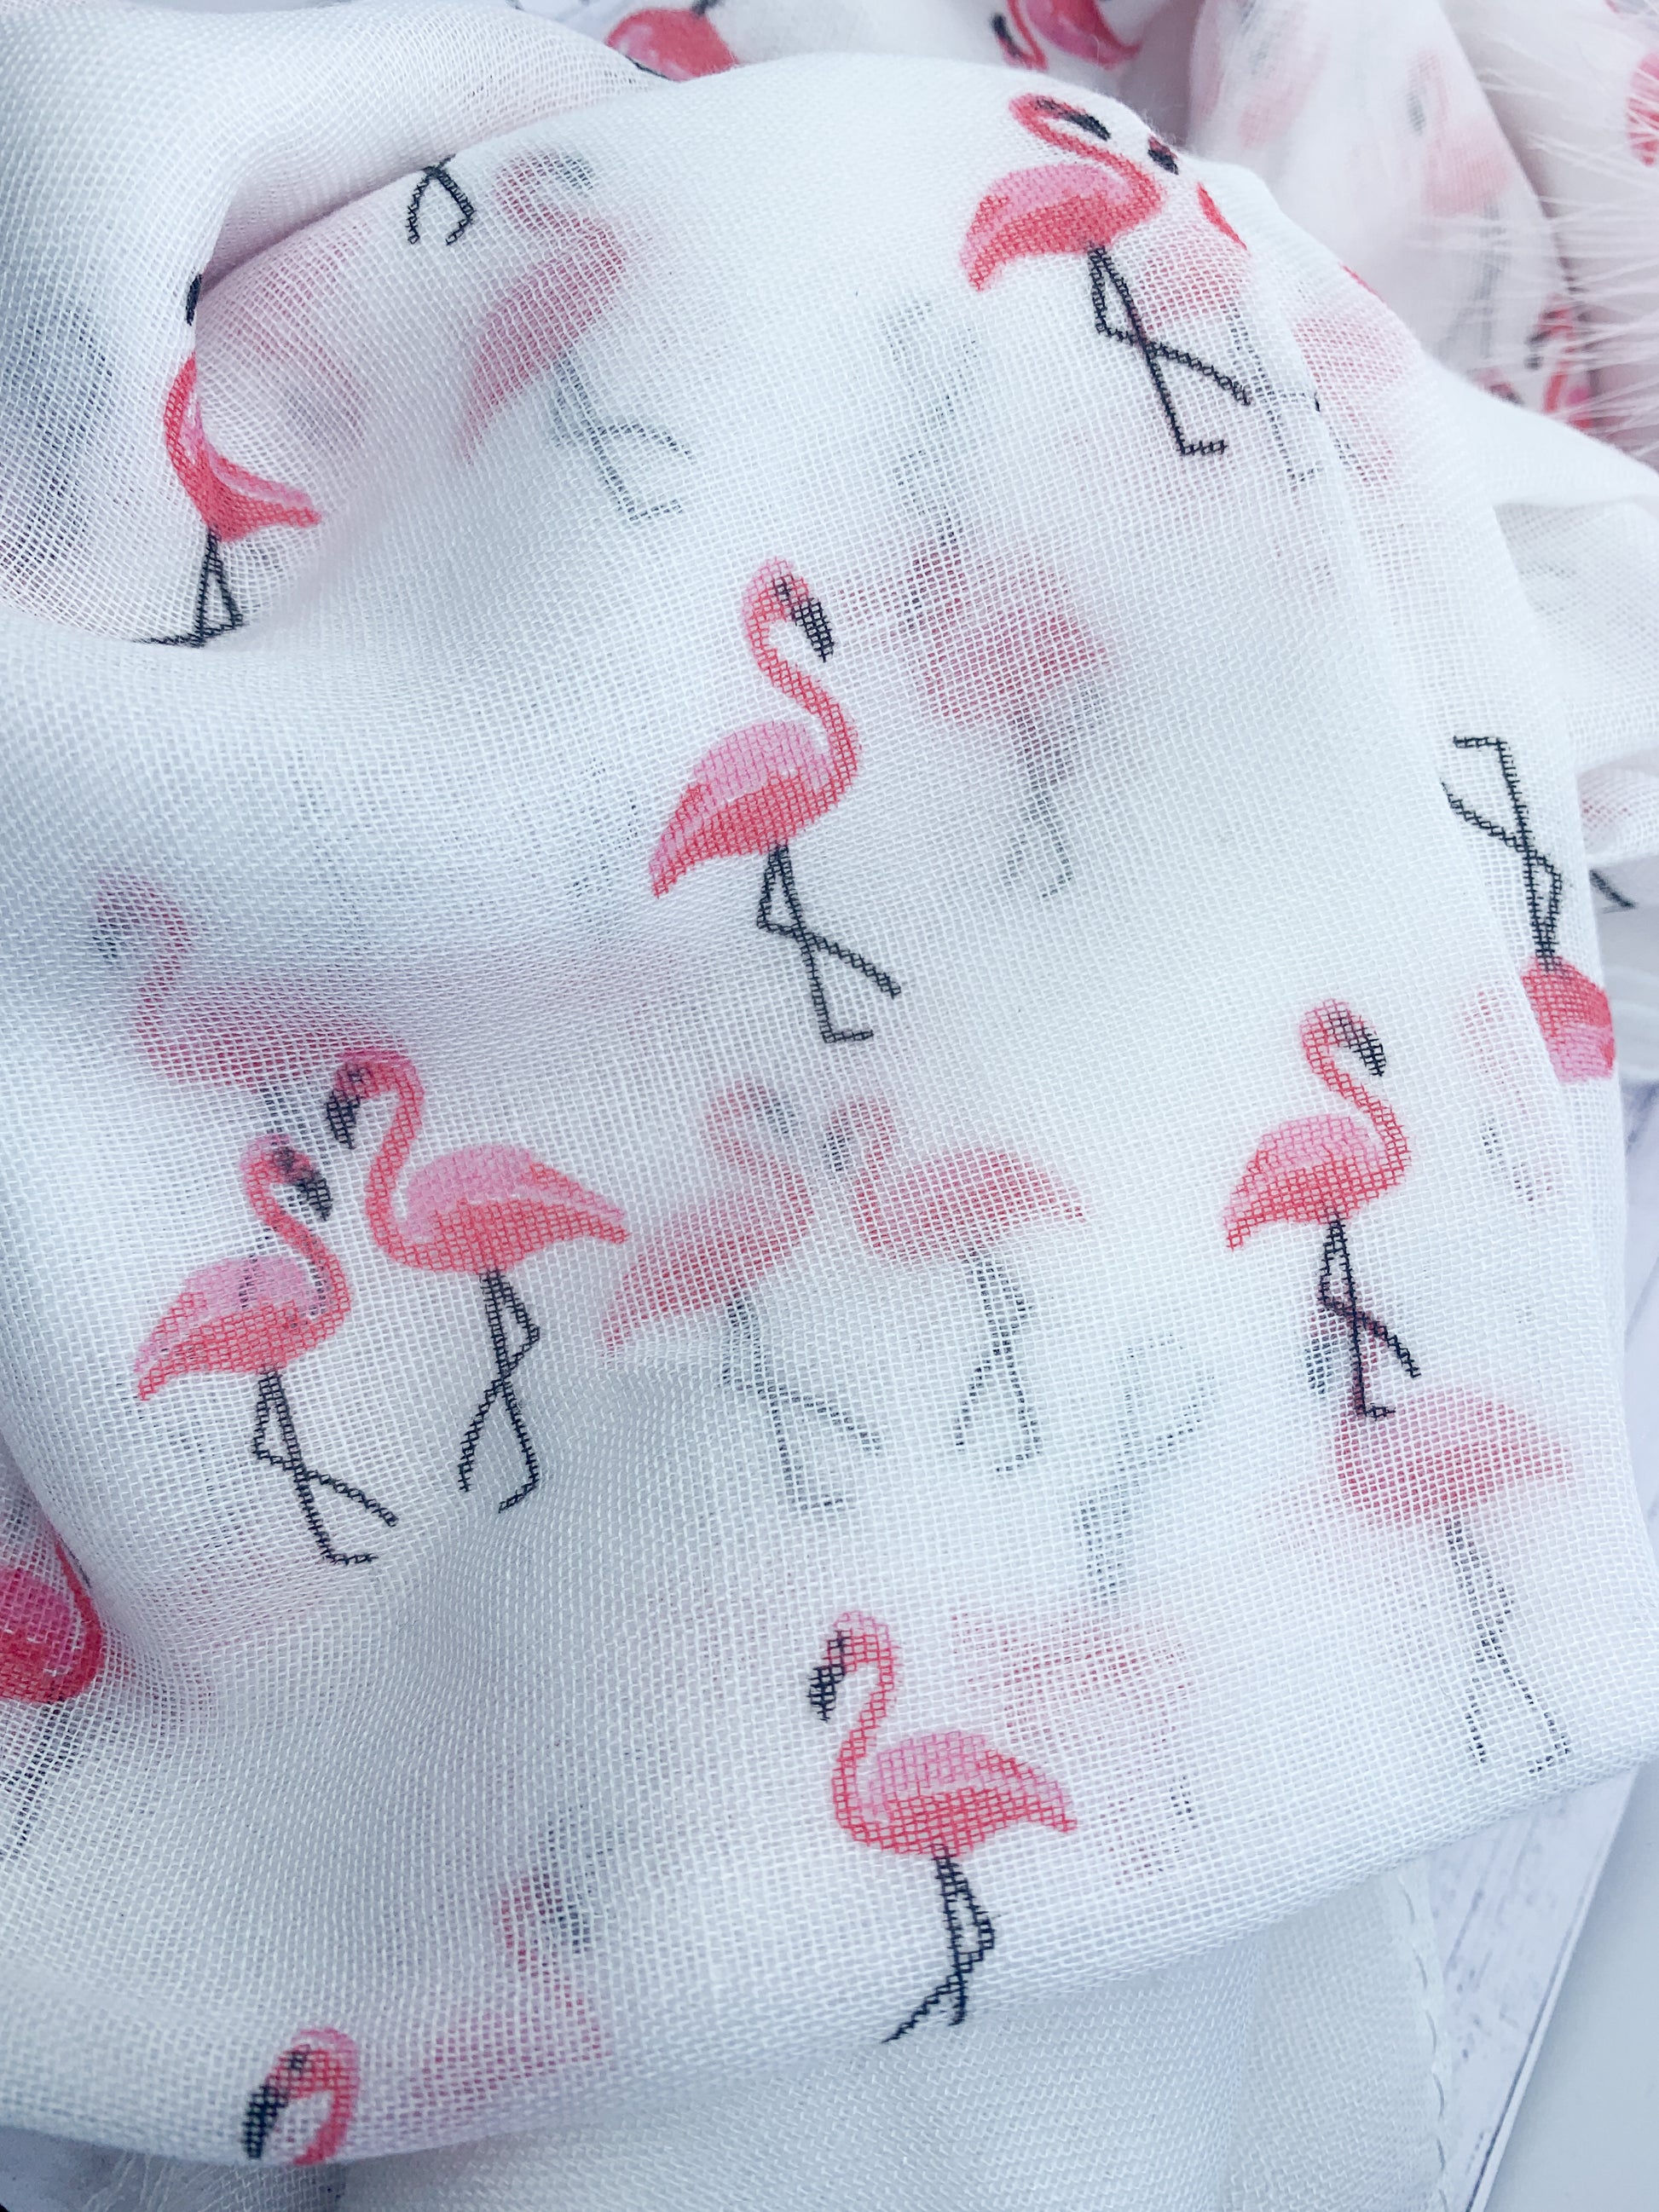 Flamingo scarf - Eve & Flamingo